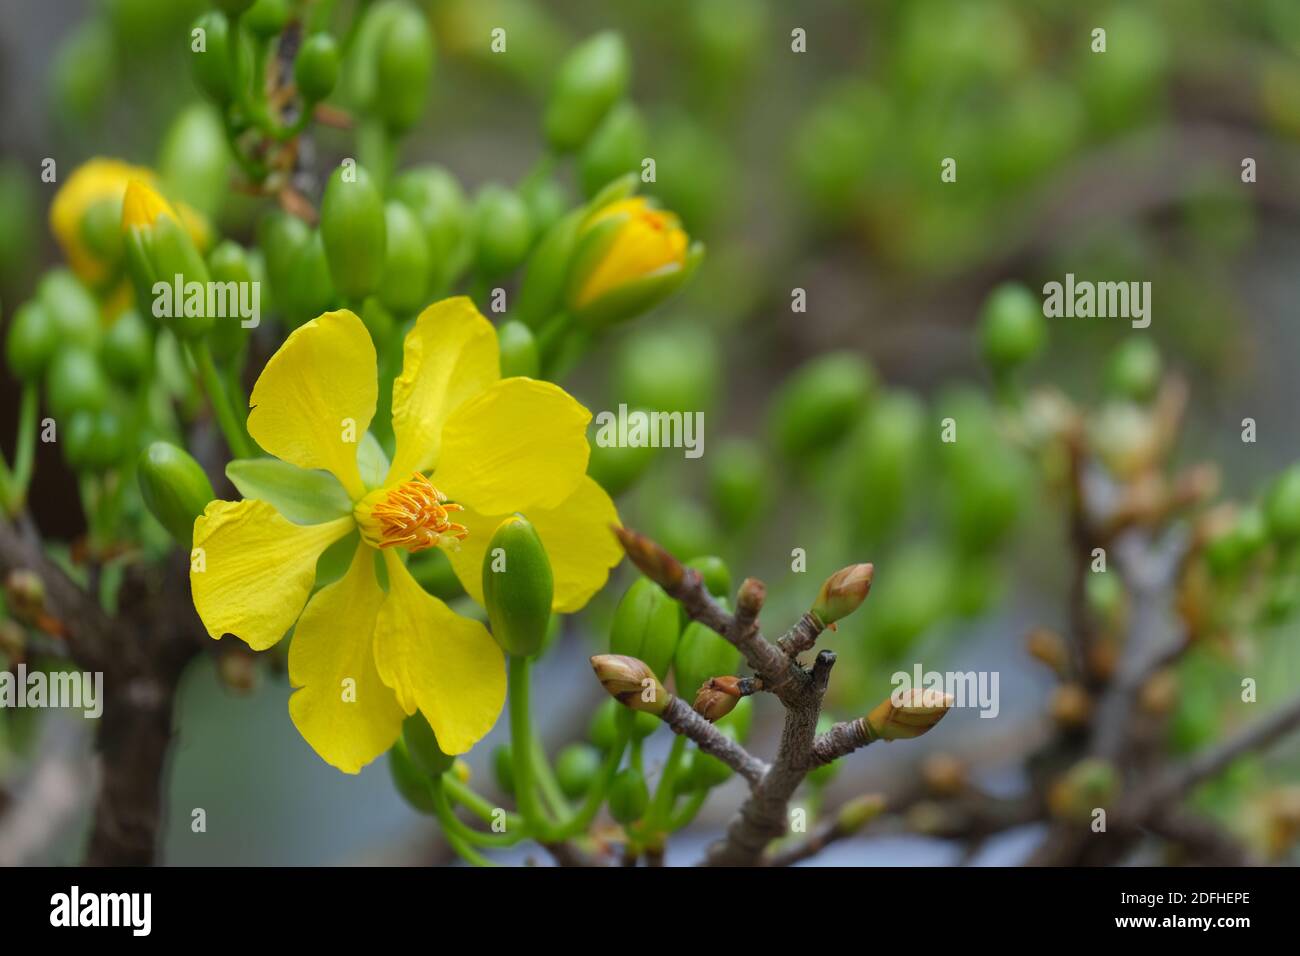 Immagine libera di alta qualità di Ochnaceae. Ochna integerrima è il simbolo del tradizionale Capodanno lunare vietnamita. Mai fiore in vietnamita Foto Stock